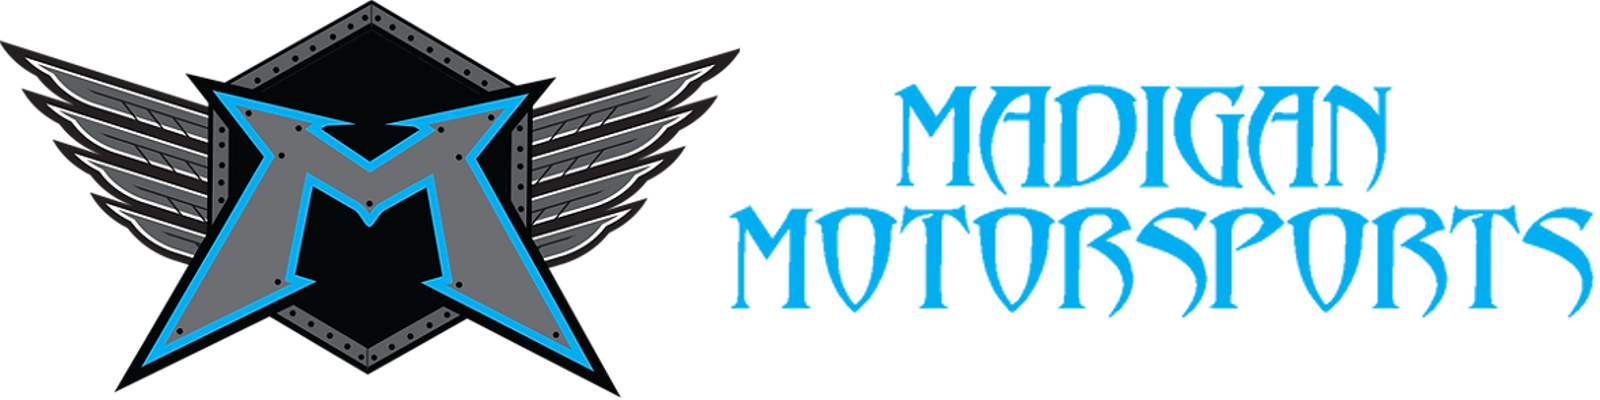 Madigan Motorsports Logo